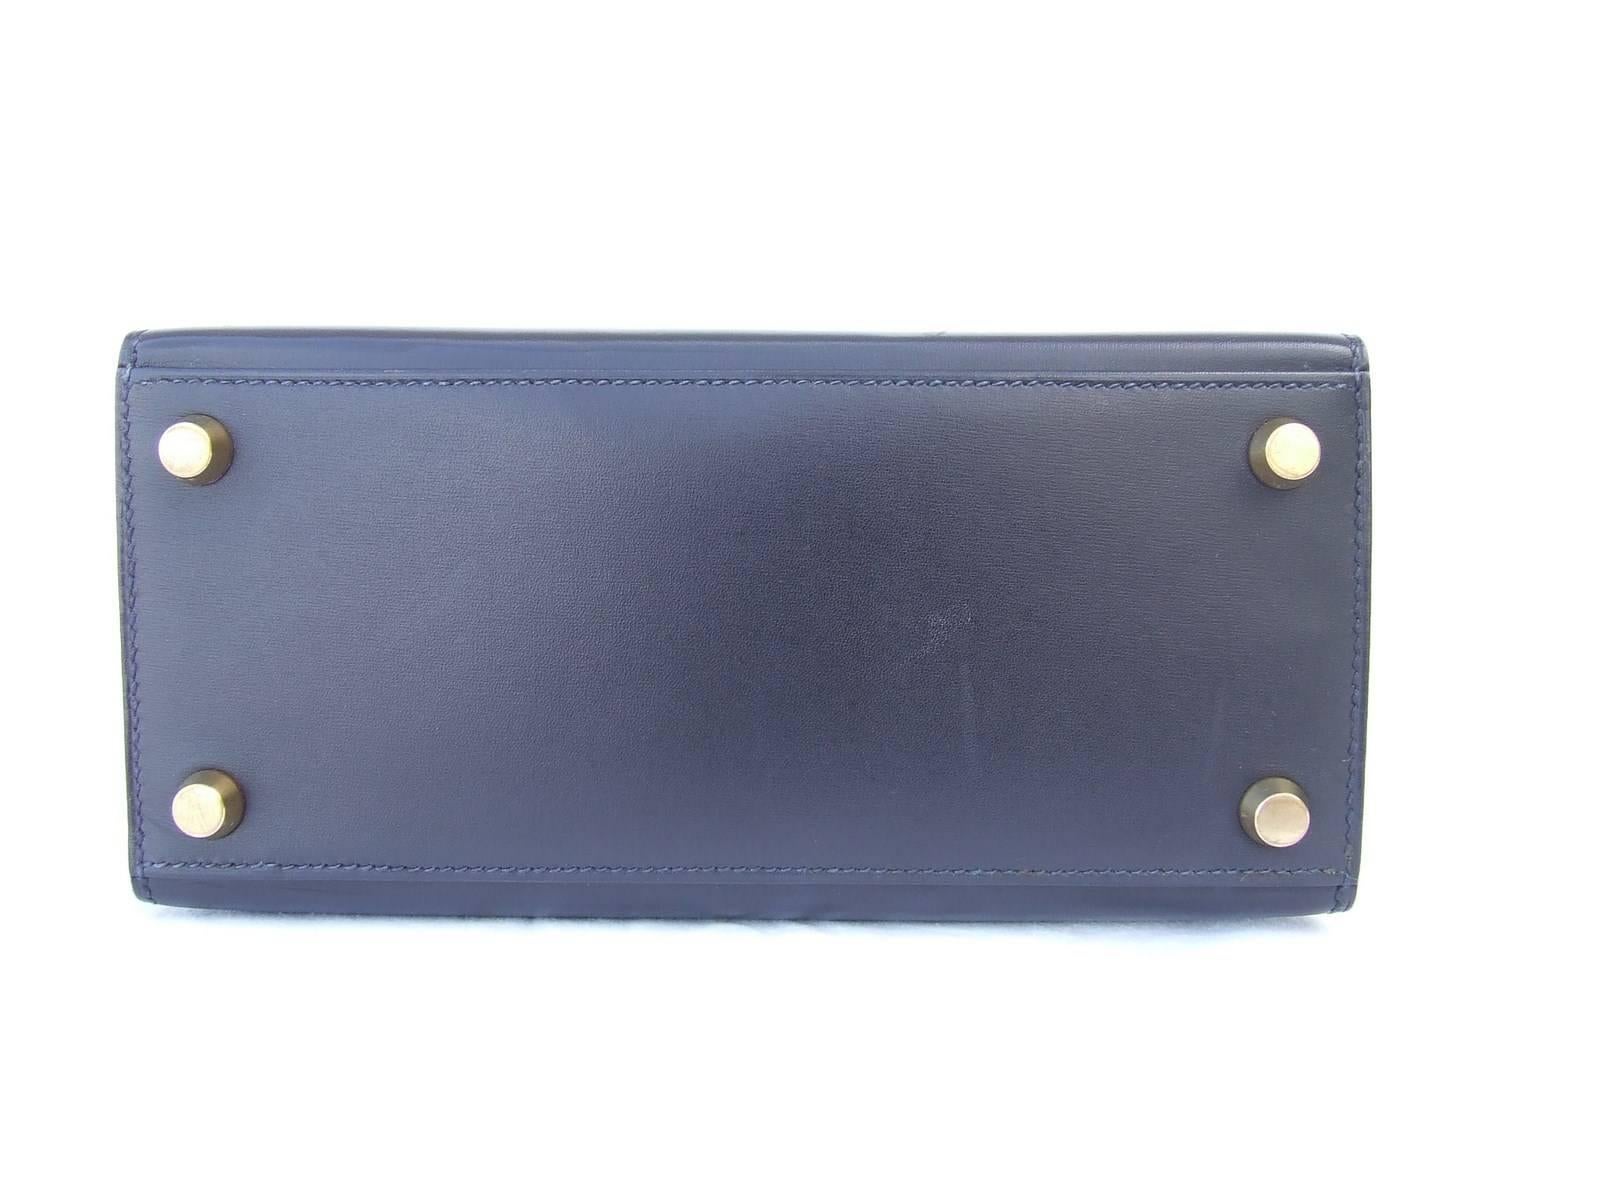 Women's Hermes Mini Kelly 20 cm Sellier Bag Navy Blue Box Golden Hardware RARE